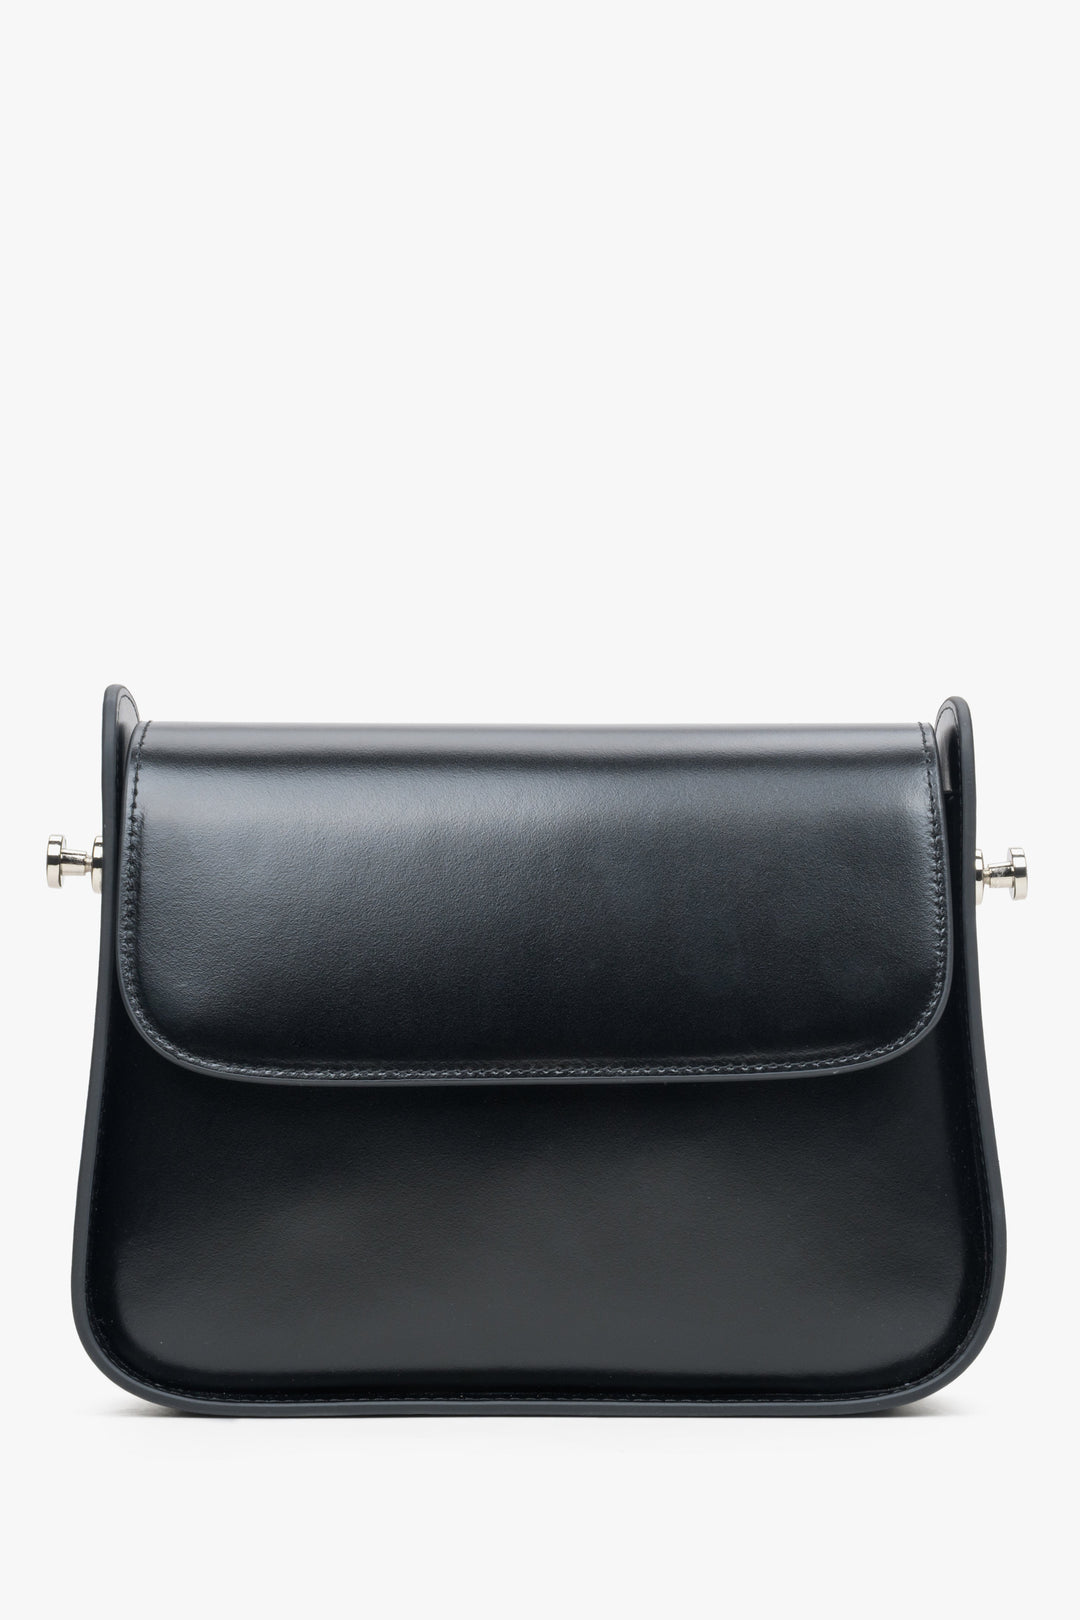 Skórzana torebka damska na ramię w kolorze czarnym marki Estro.